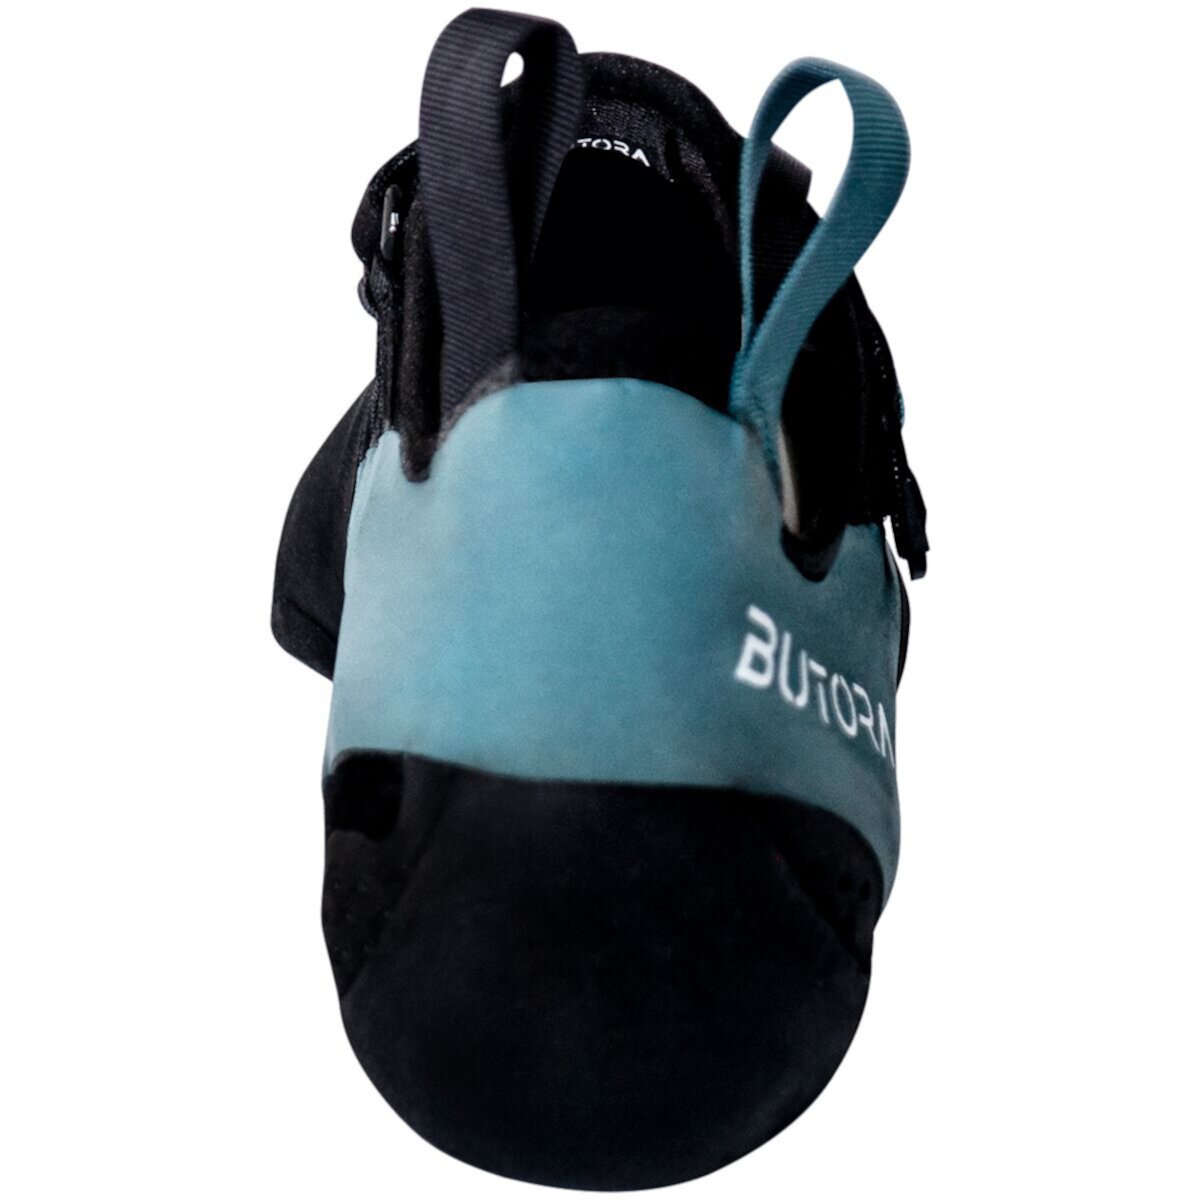 Ботинки для скалолазания Butora Gomi - широкие Butora